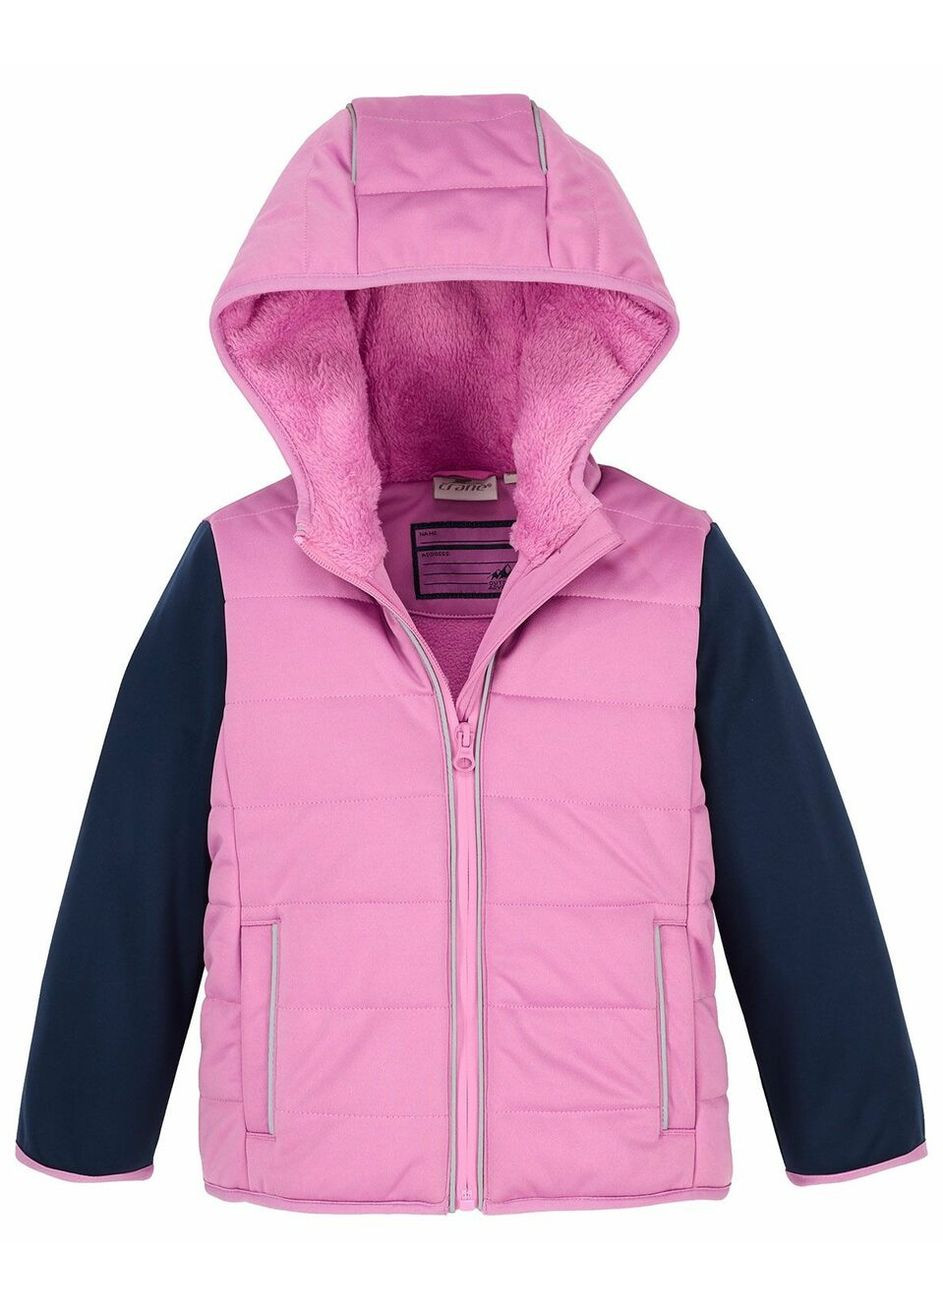 Розовая демисезонная куртка softshell утепленная на флисовой подкладке для девочки 816122/39 Crane